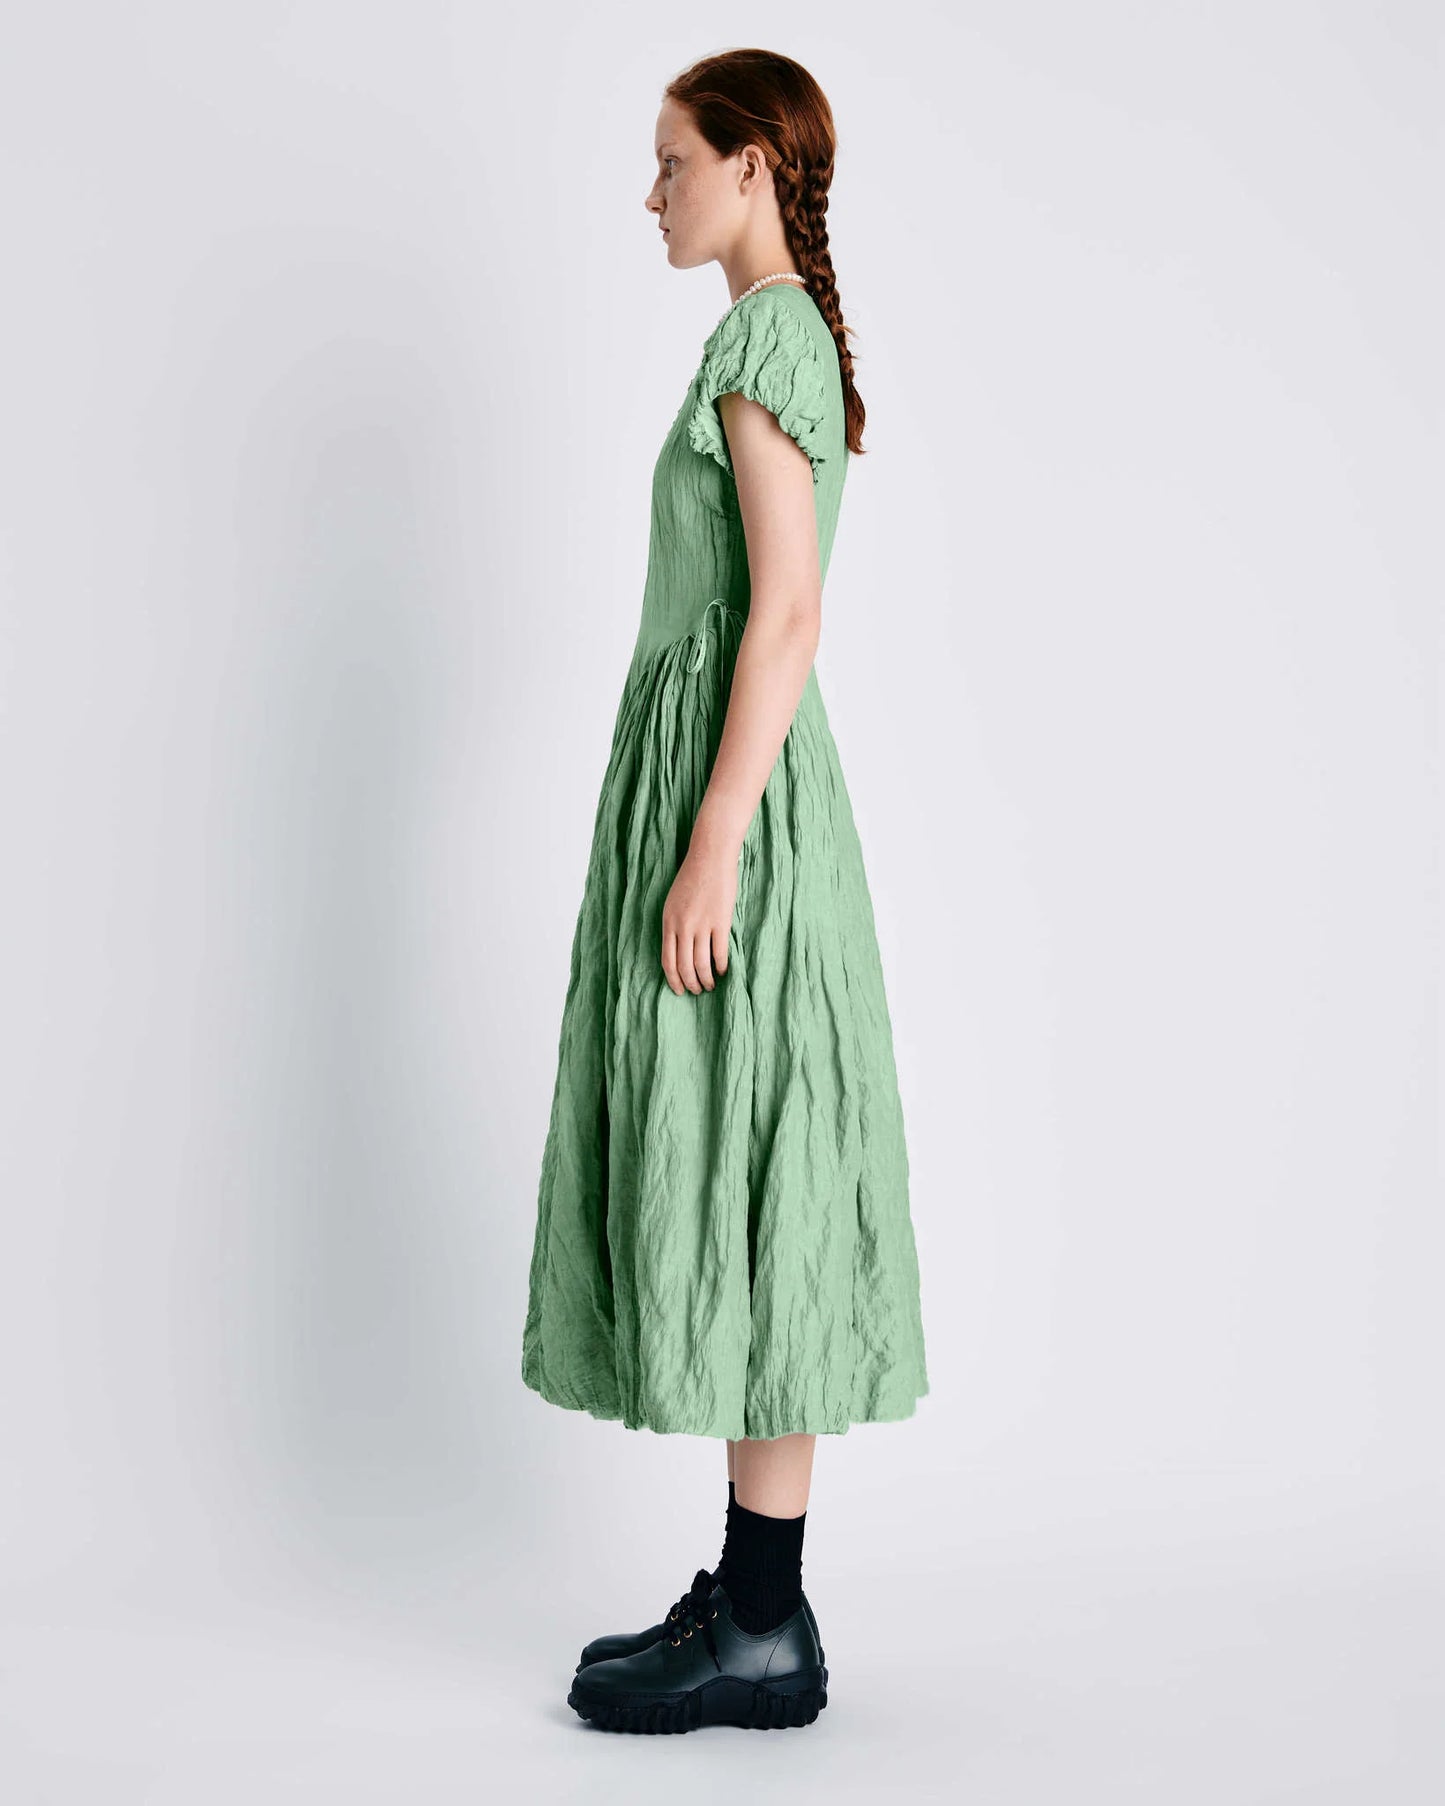 Hilma dress in green